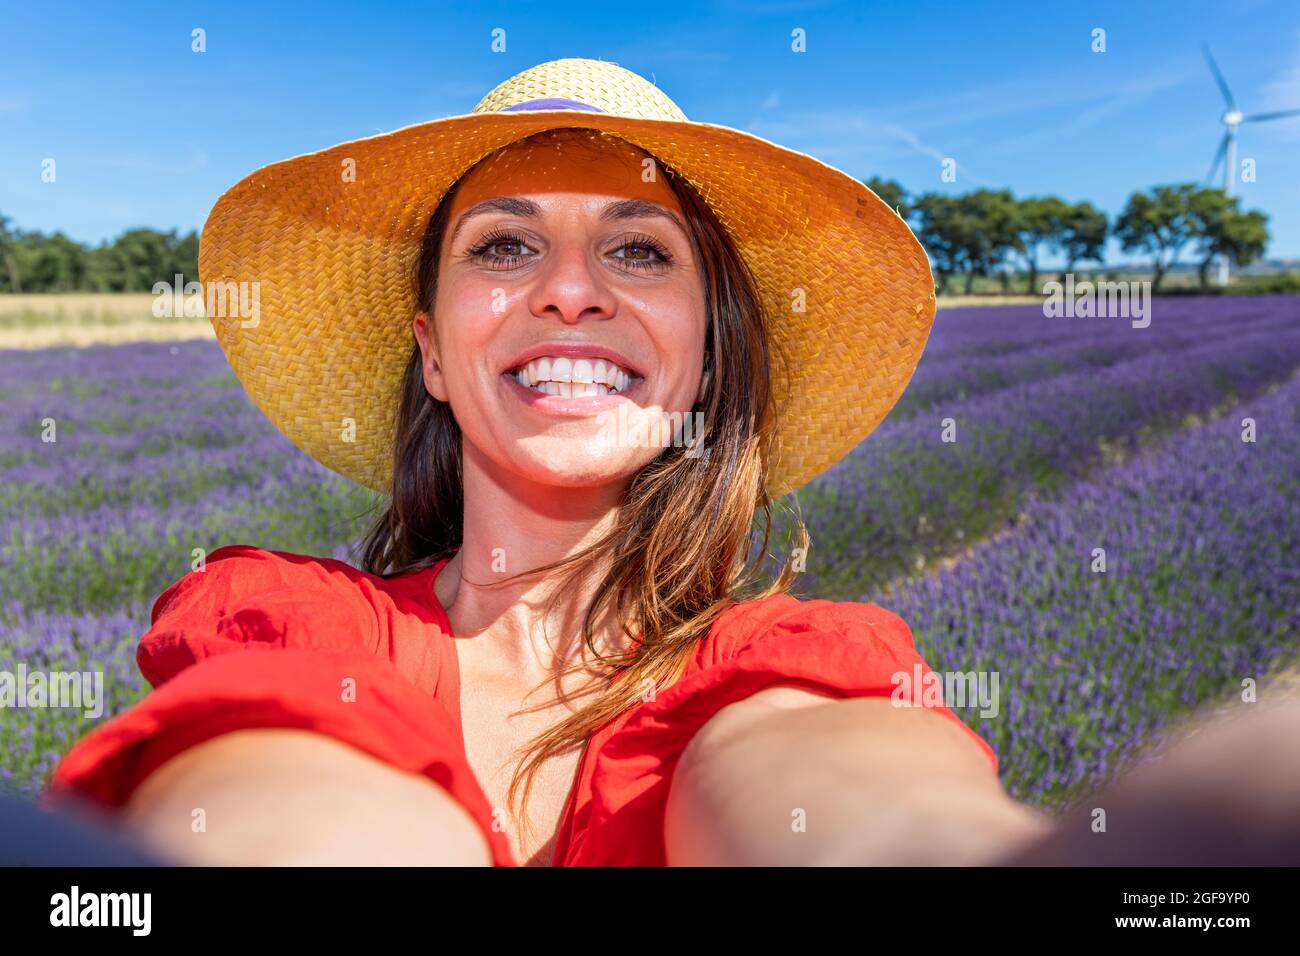 Schöne lächelnde Frau mit einem Strohhut, die ein Selfie in einem blühenden Lavendelfeld nimmt. Konzept von Glück, Wohlbefinden und Freiheit. Stockfoto